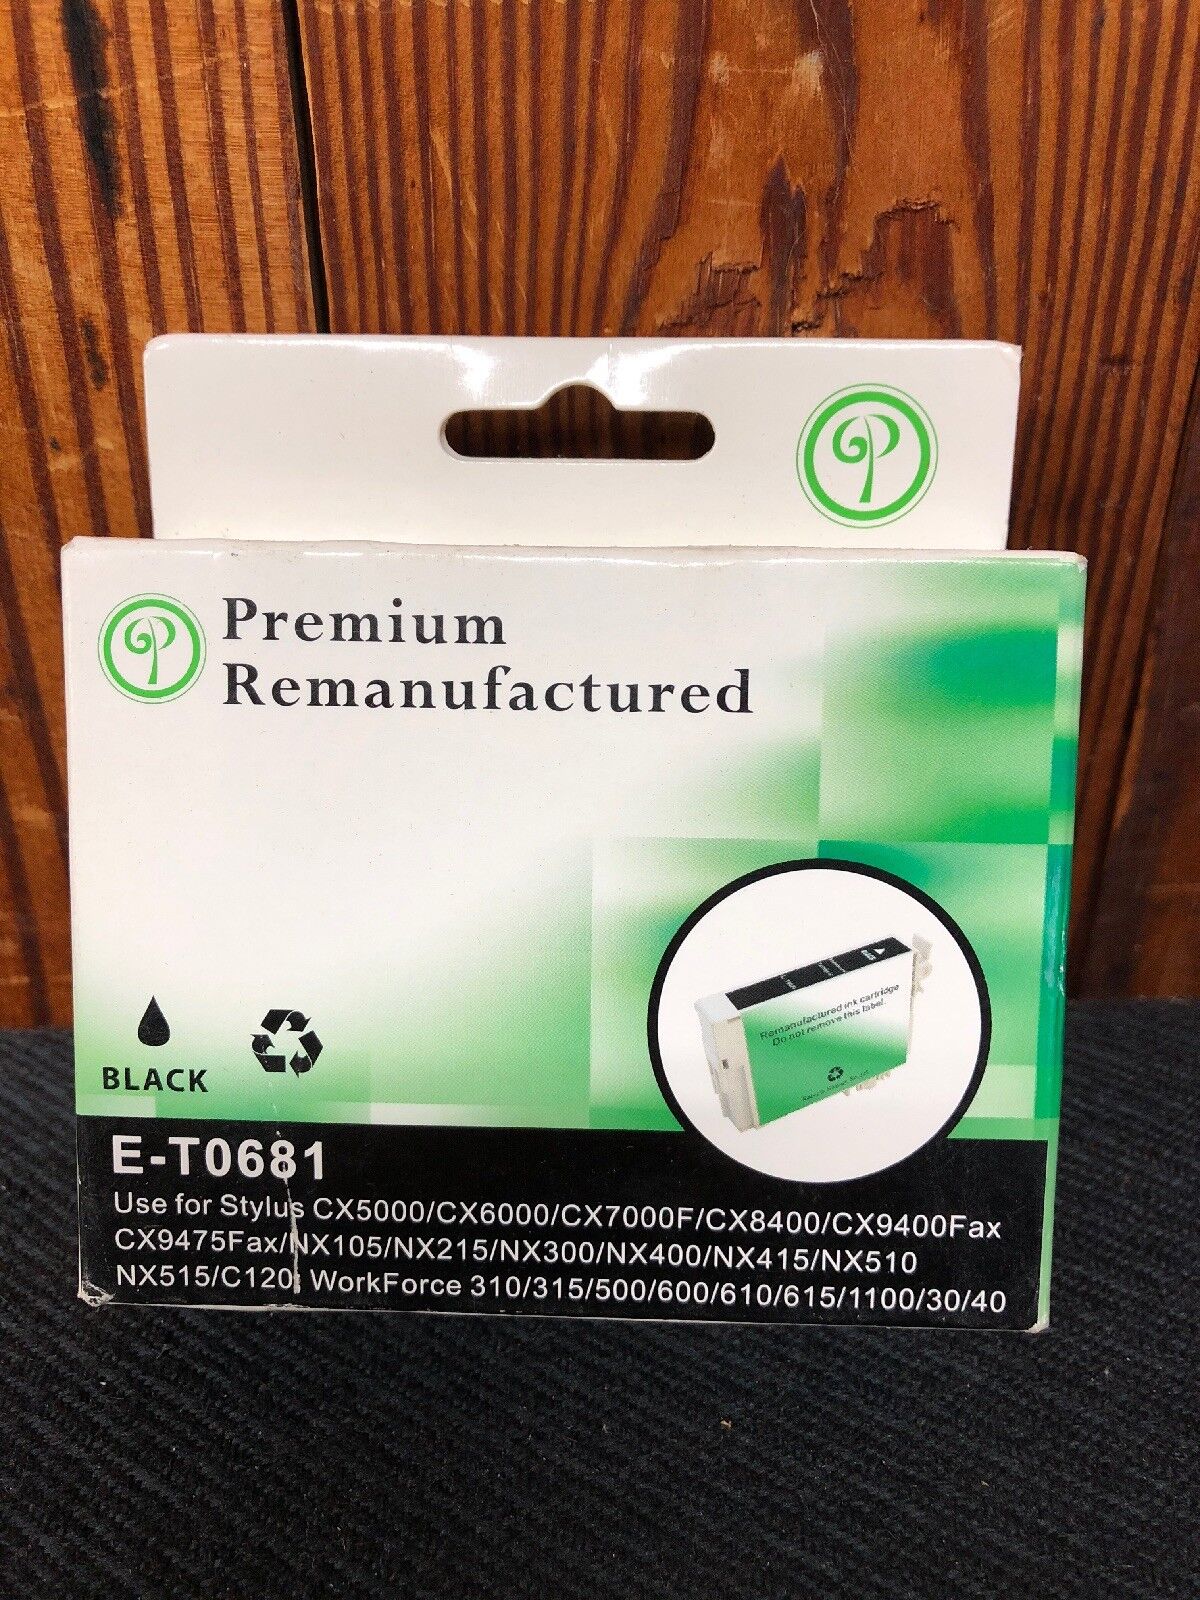 Premium Remanufactured Black Ink Cartridge -EXPIRED